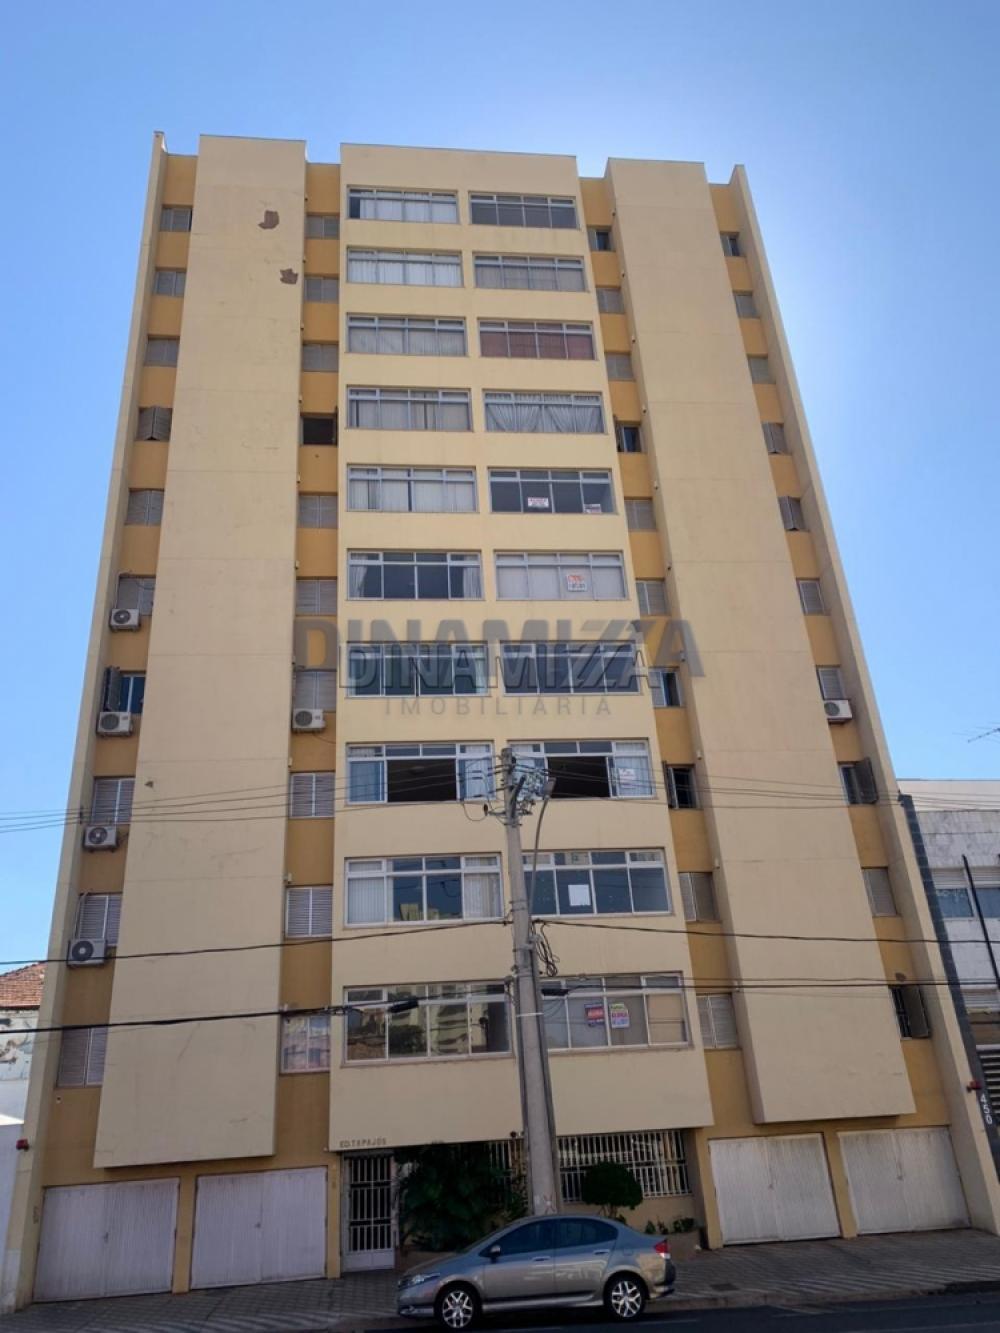 Uberaba Apartamento Venda R$200.000,00 Condominio R$1.000,00 3 Dormitorios 1 Suite Area construida 120.00m2